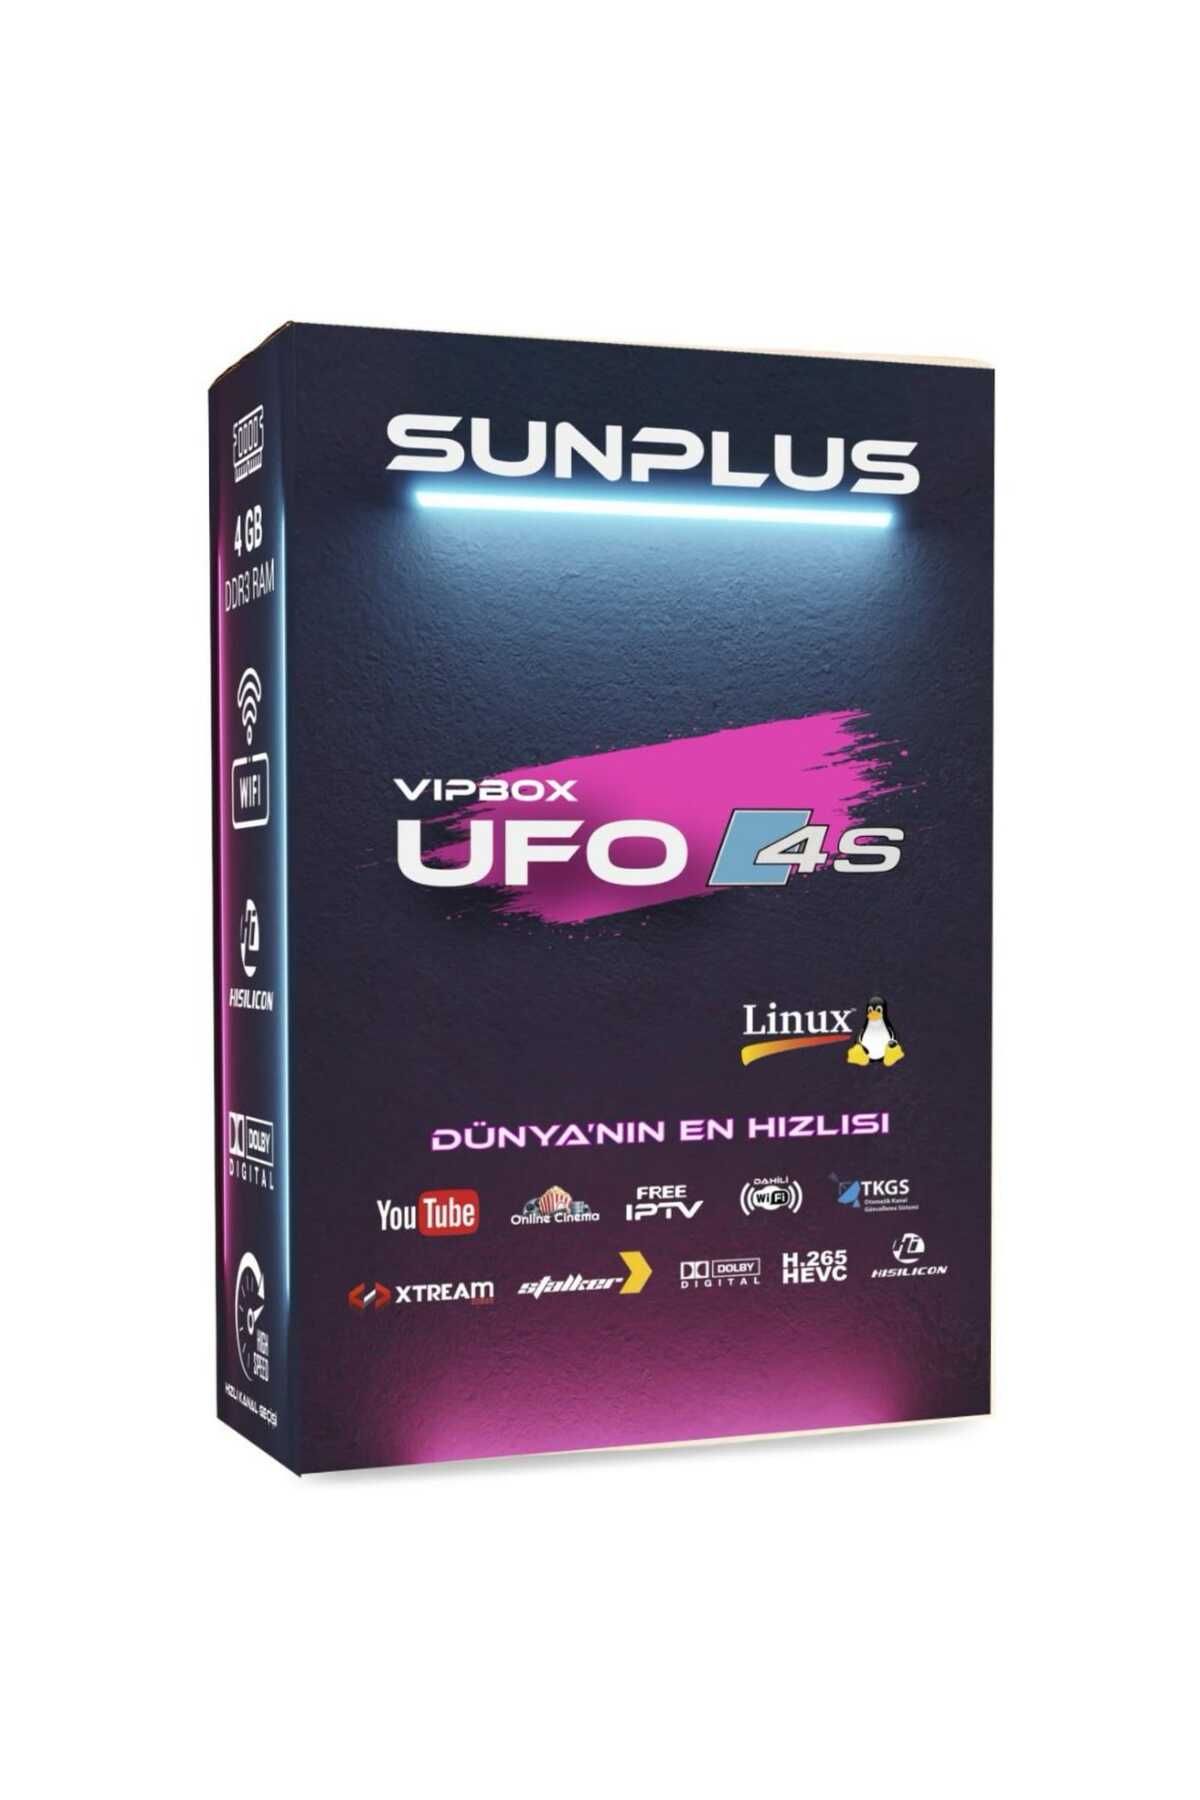 Sunplus Vıpbox Ufo 4s Uydu Alıcısı 4gb Ram - Wi-fi Dünya'nın En Hızlısı